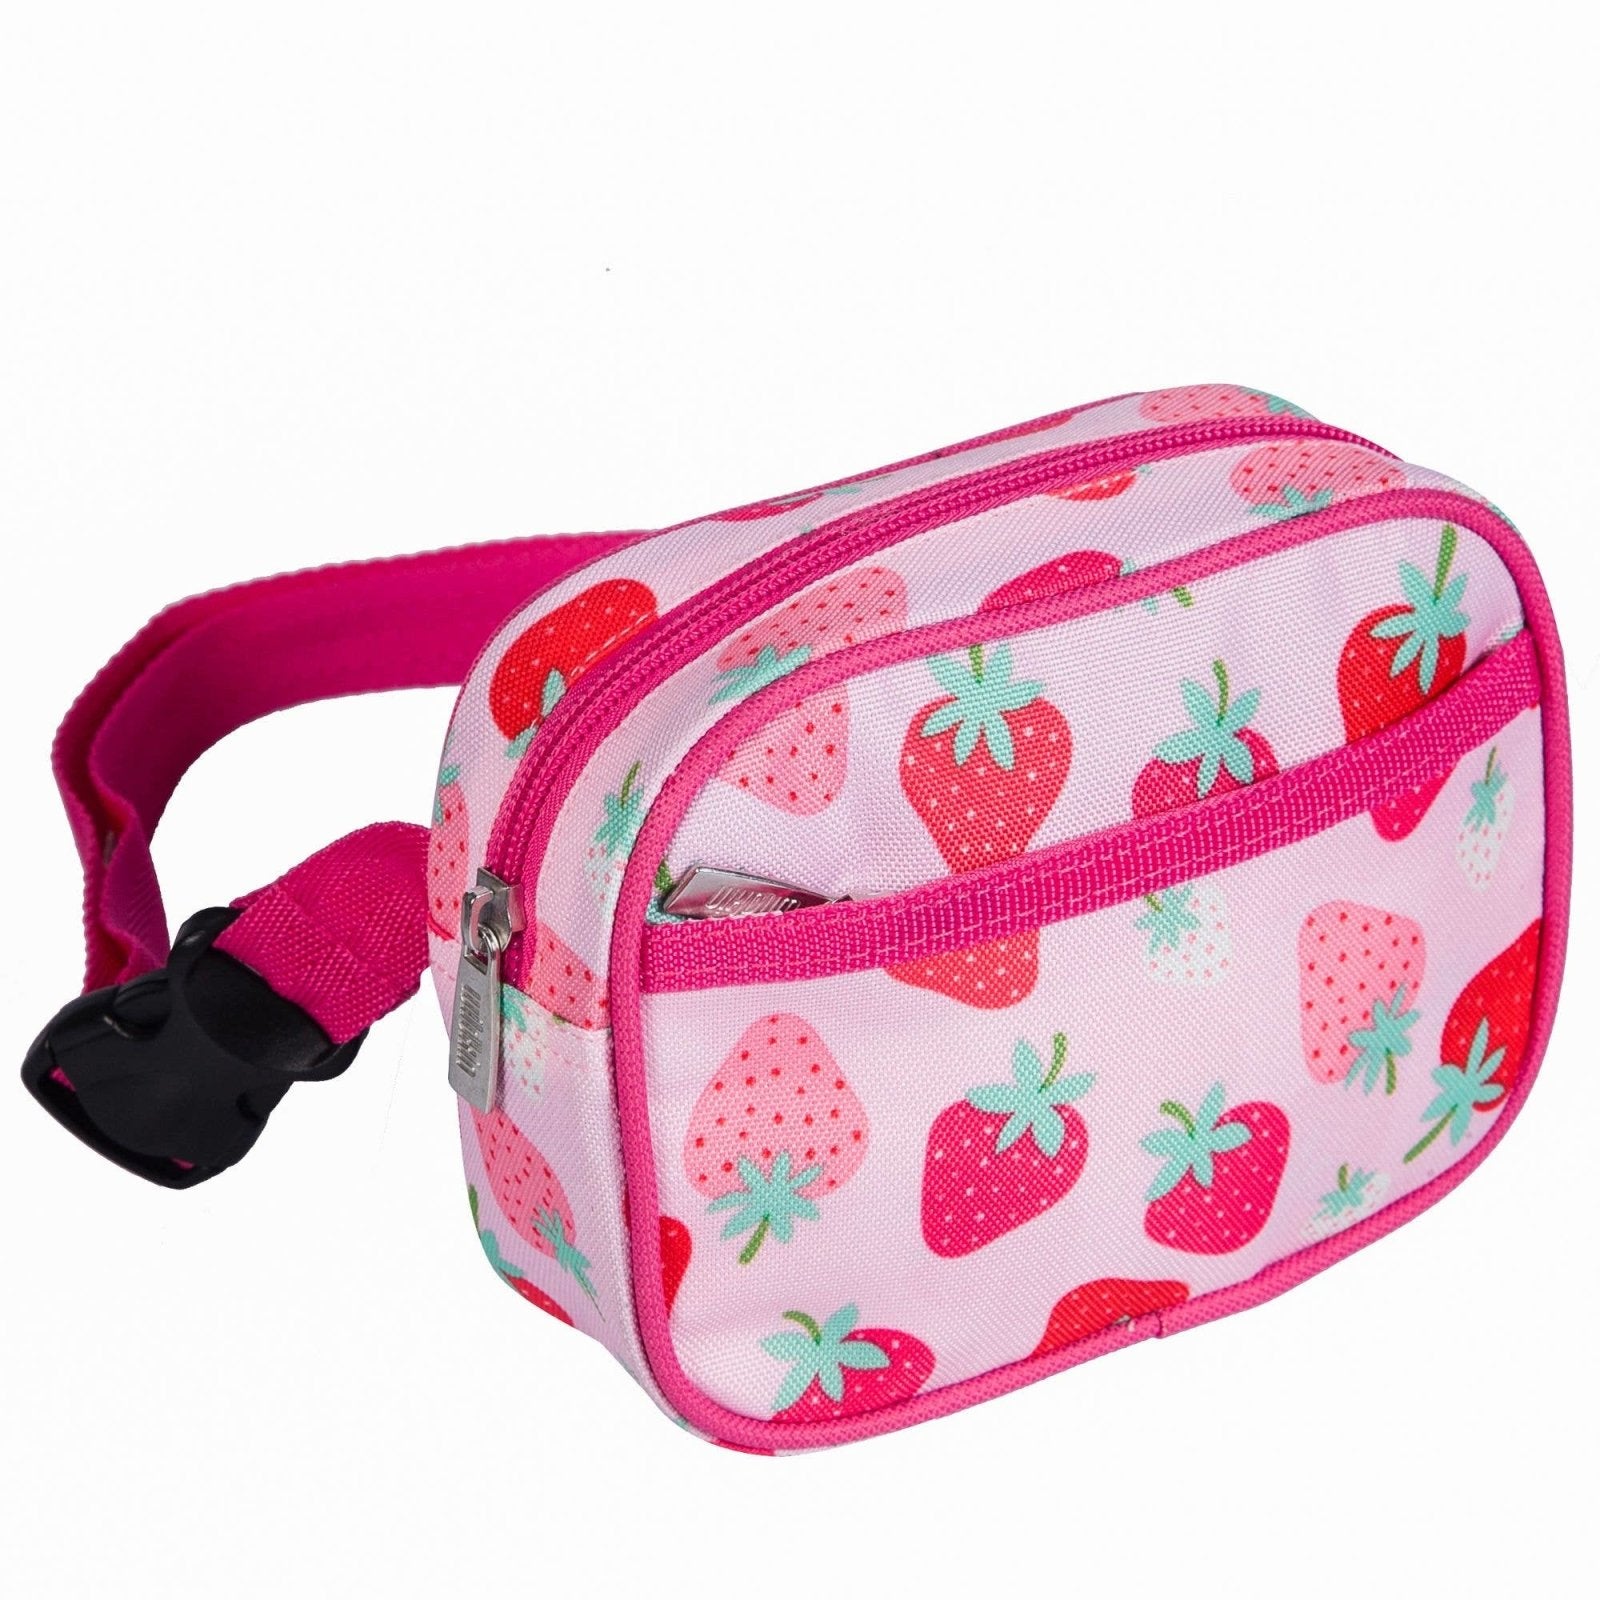 https://www.honeypiekids.com/cdn/shop/products/wildkin-strawberry-patch-kids-fanny-pack-honeypiekids-kids-boutique-984679.jpg?v=1690481539